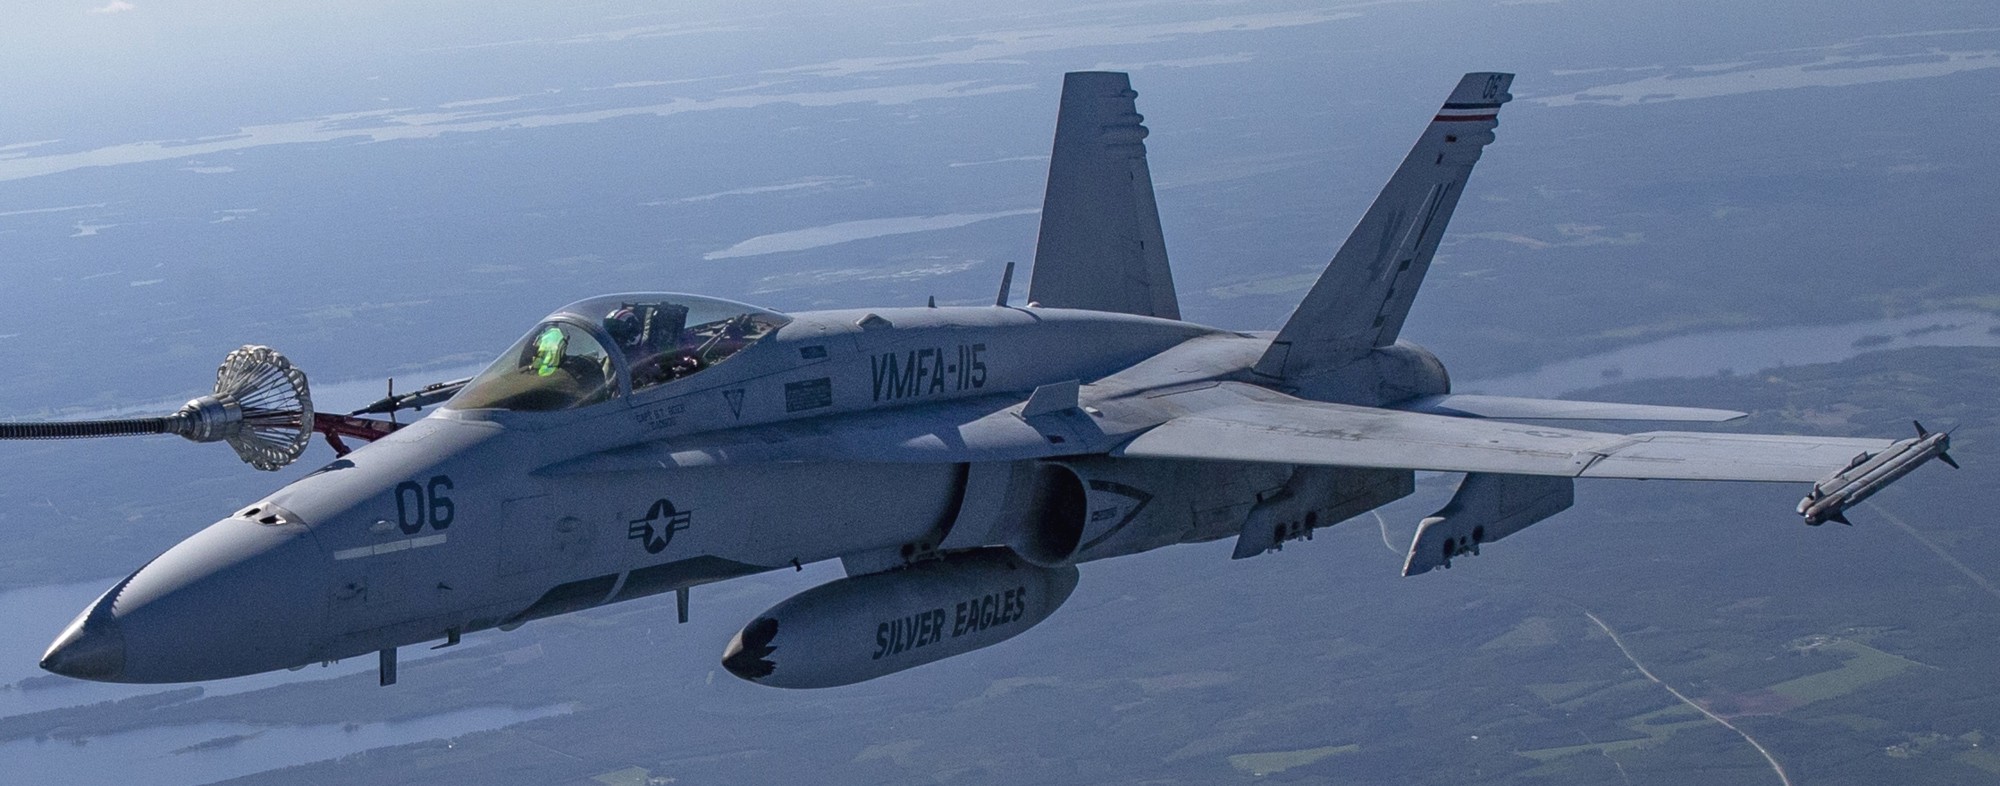 vmfa-115 silver eagles marine fighter attack squadron usmc f/a-18c hornet 211